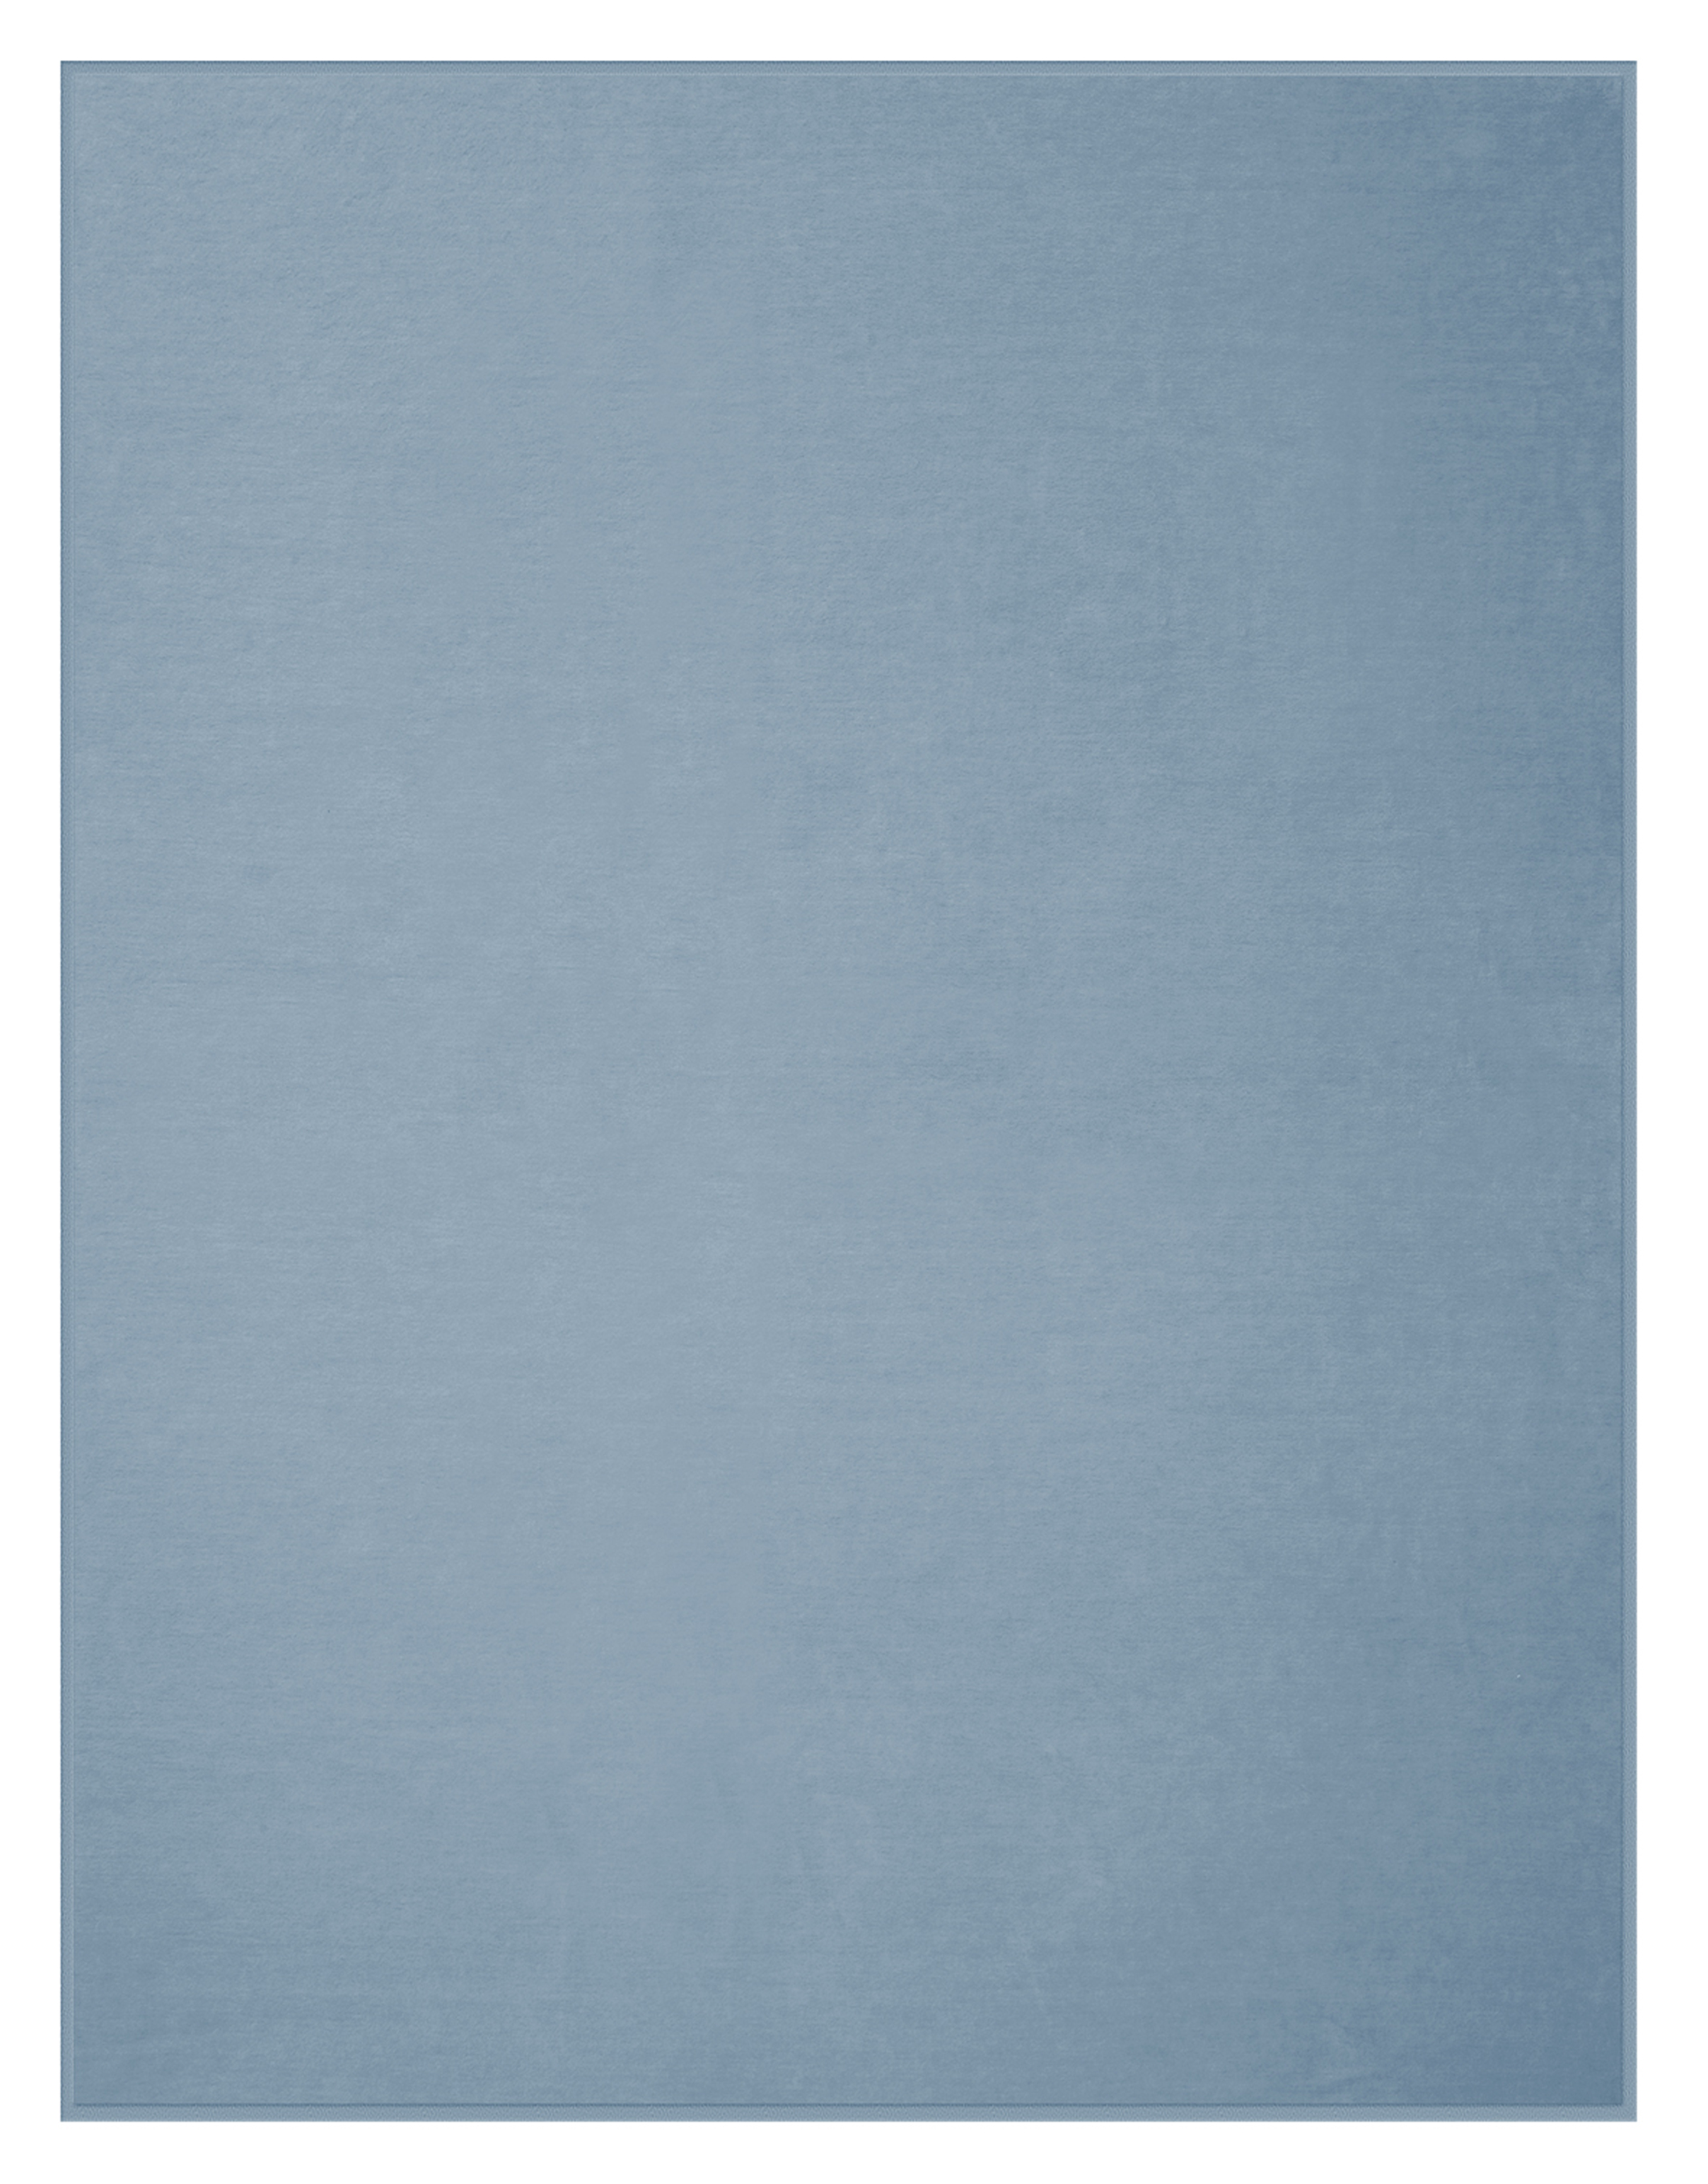 Hochwertige Wohndecke aus 100% Baumwolle in 150x200 cm in Hellblau - Freisteller